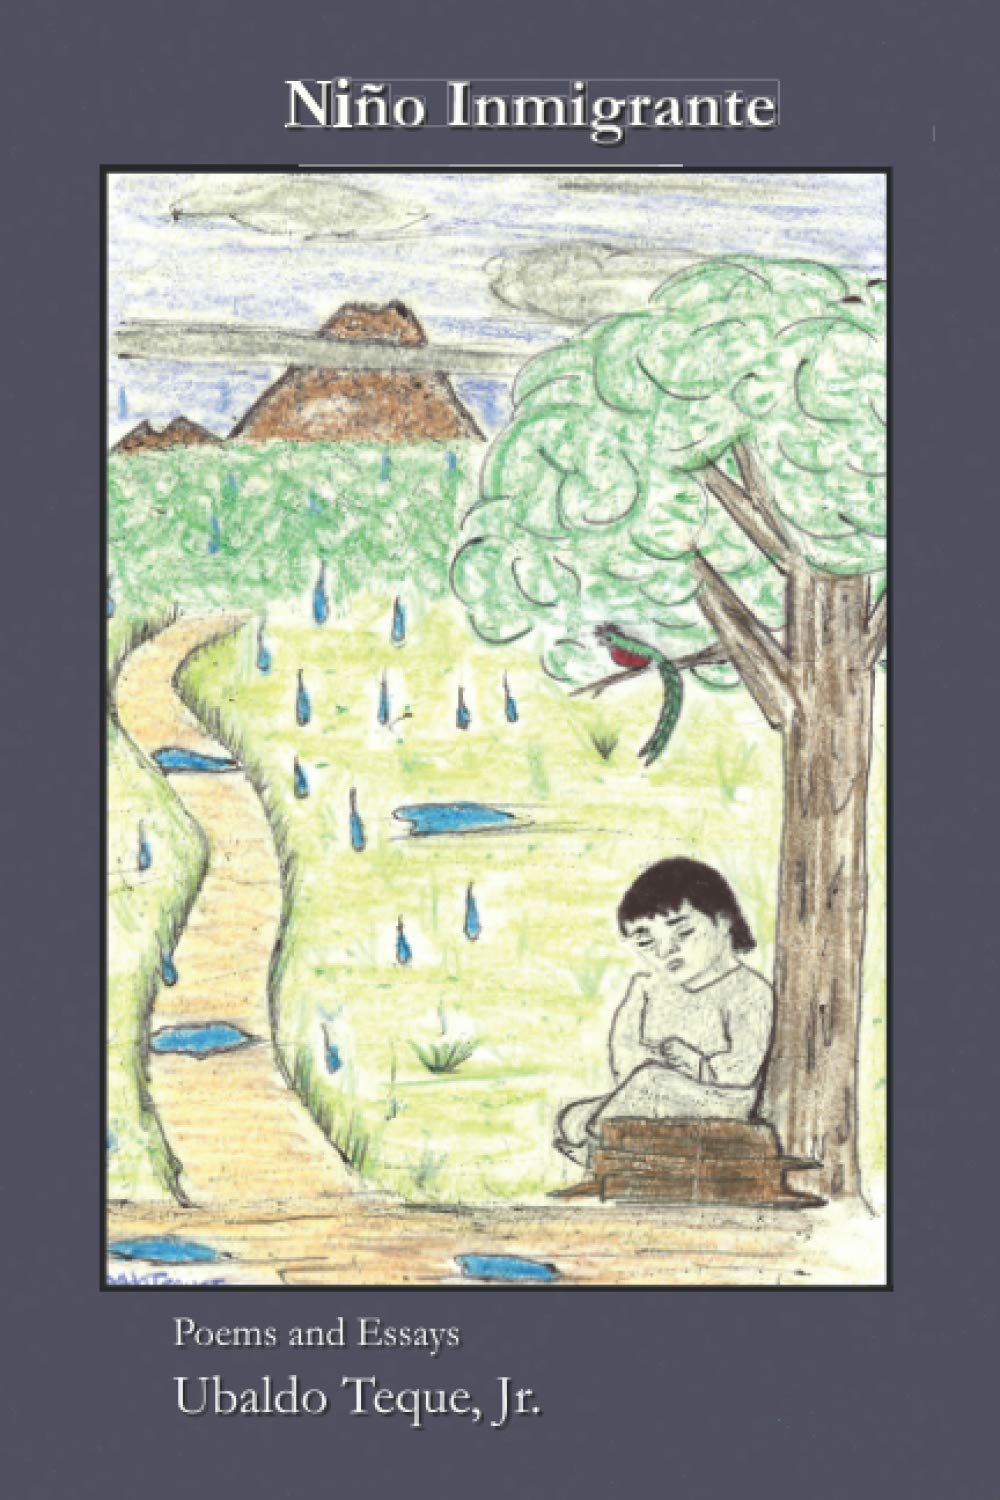 Cover of book, Niño Immigrante